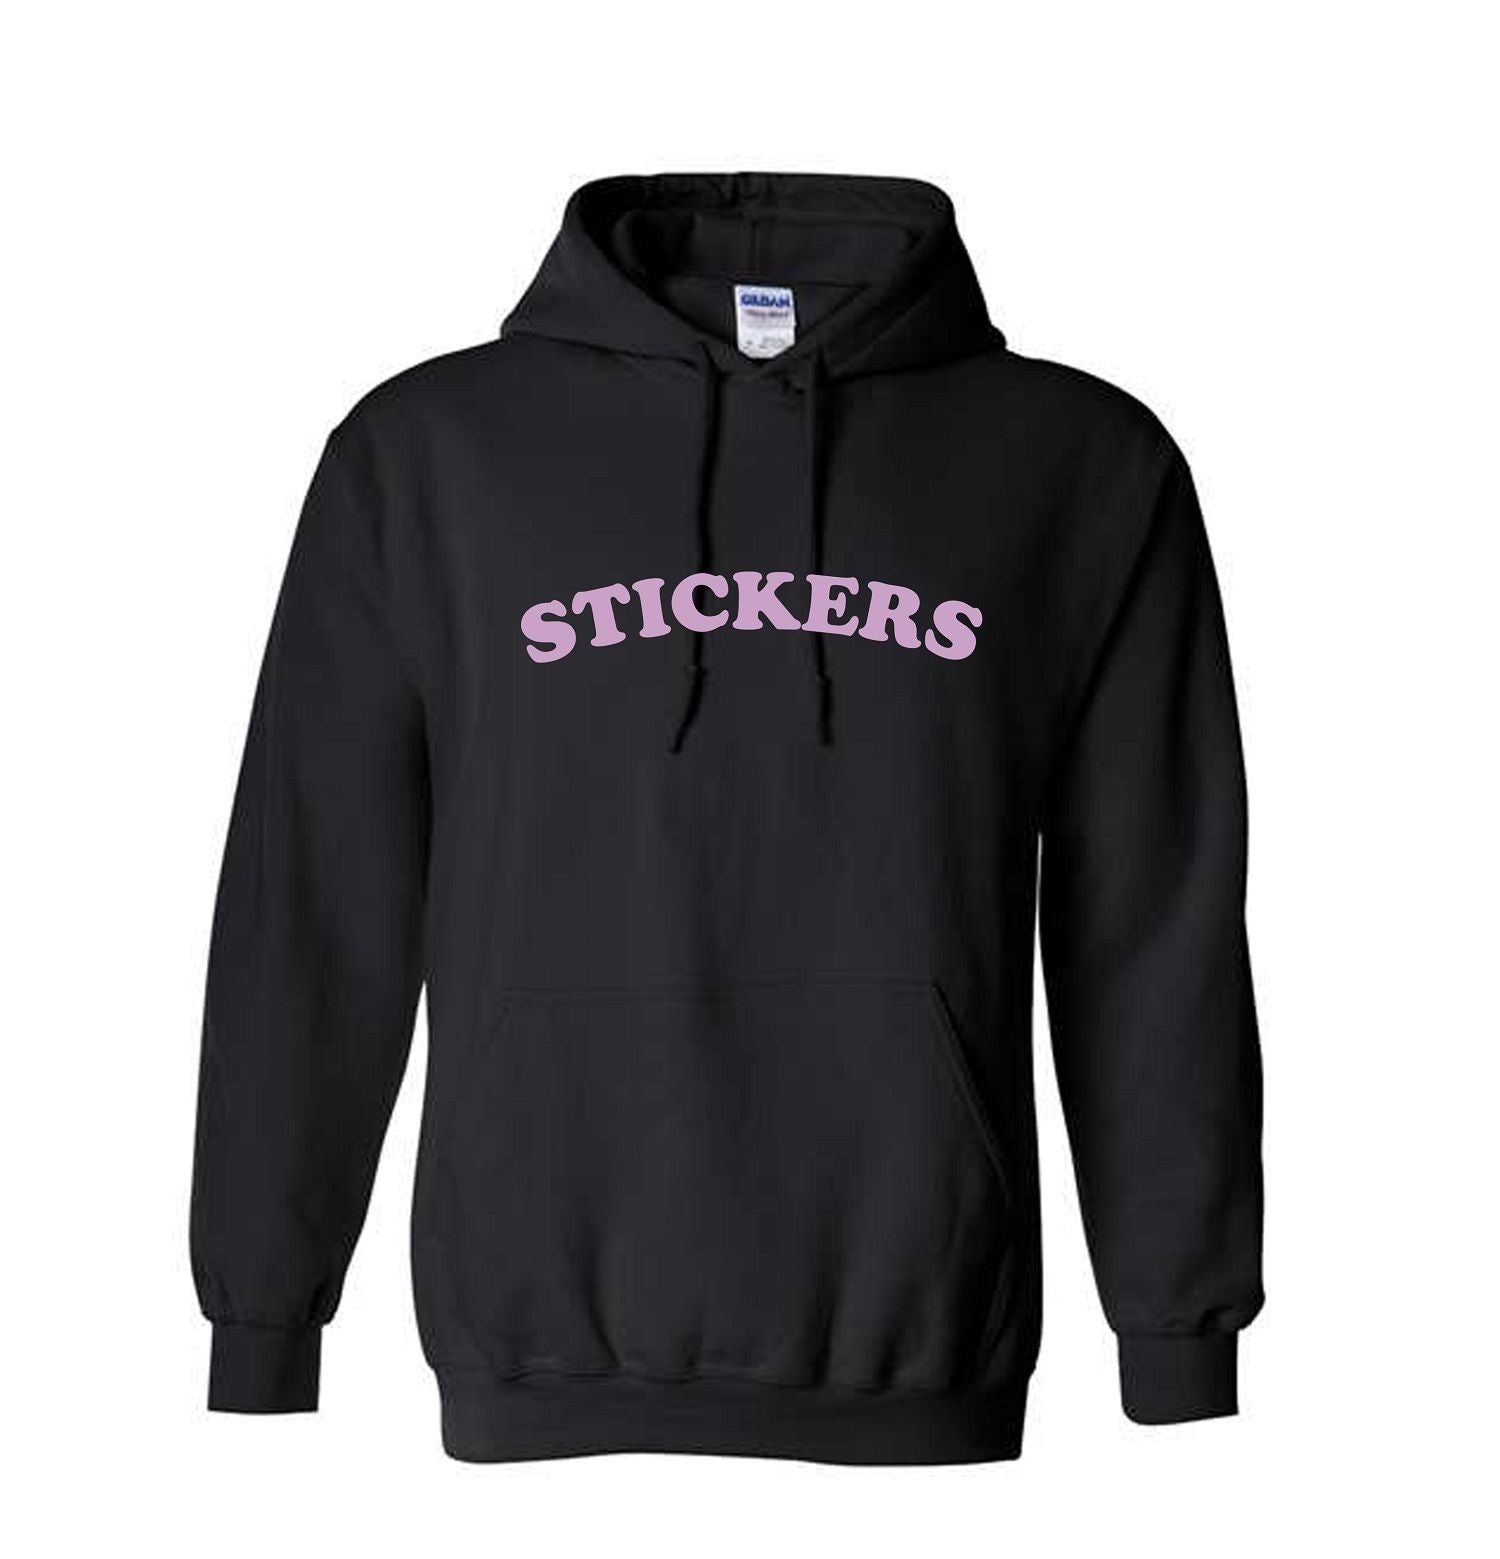 STICKERS Hoodie Sweatshirt: Black